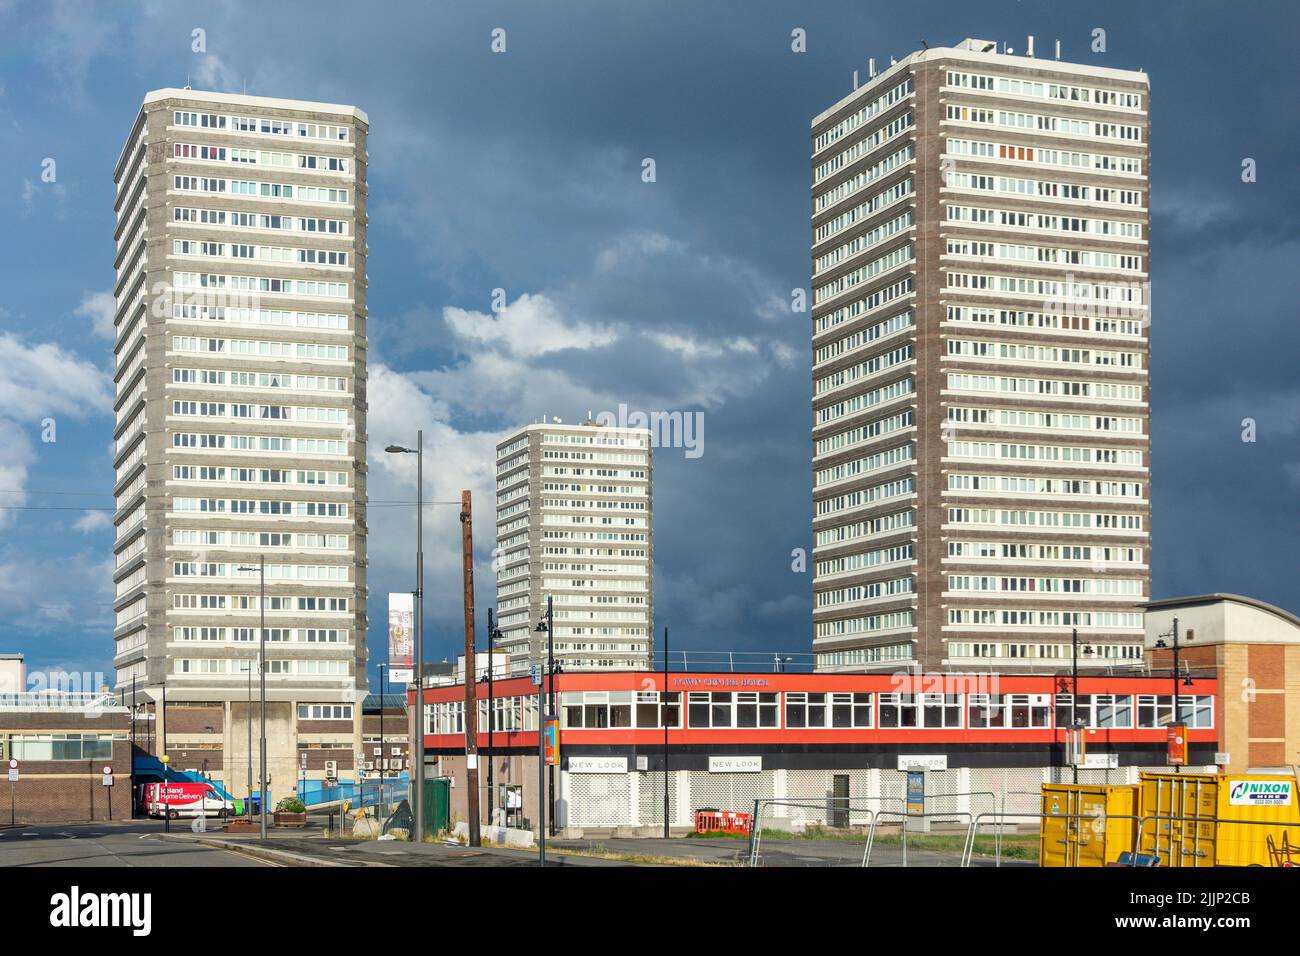 Solar, Astral et Planet Maisons des immeubles en hauteur dans le centre-ville, ville de Sunderland, Tyne et Wear, Angleterre, Royaume-Uni Banque D'Images